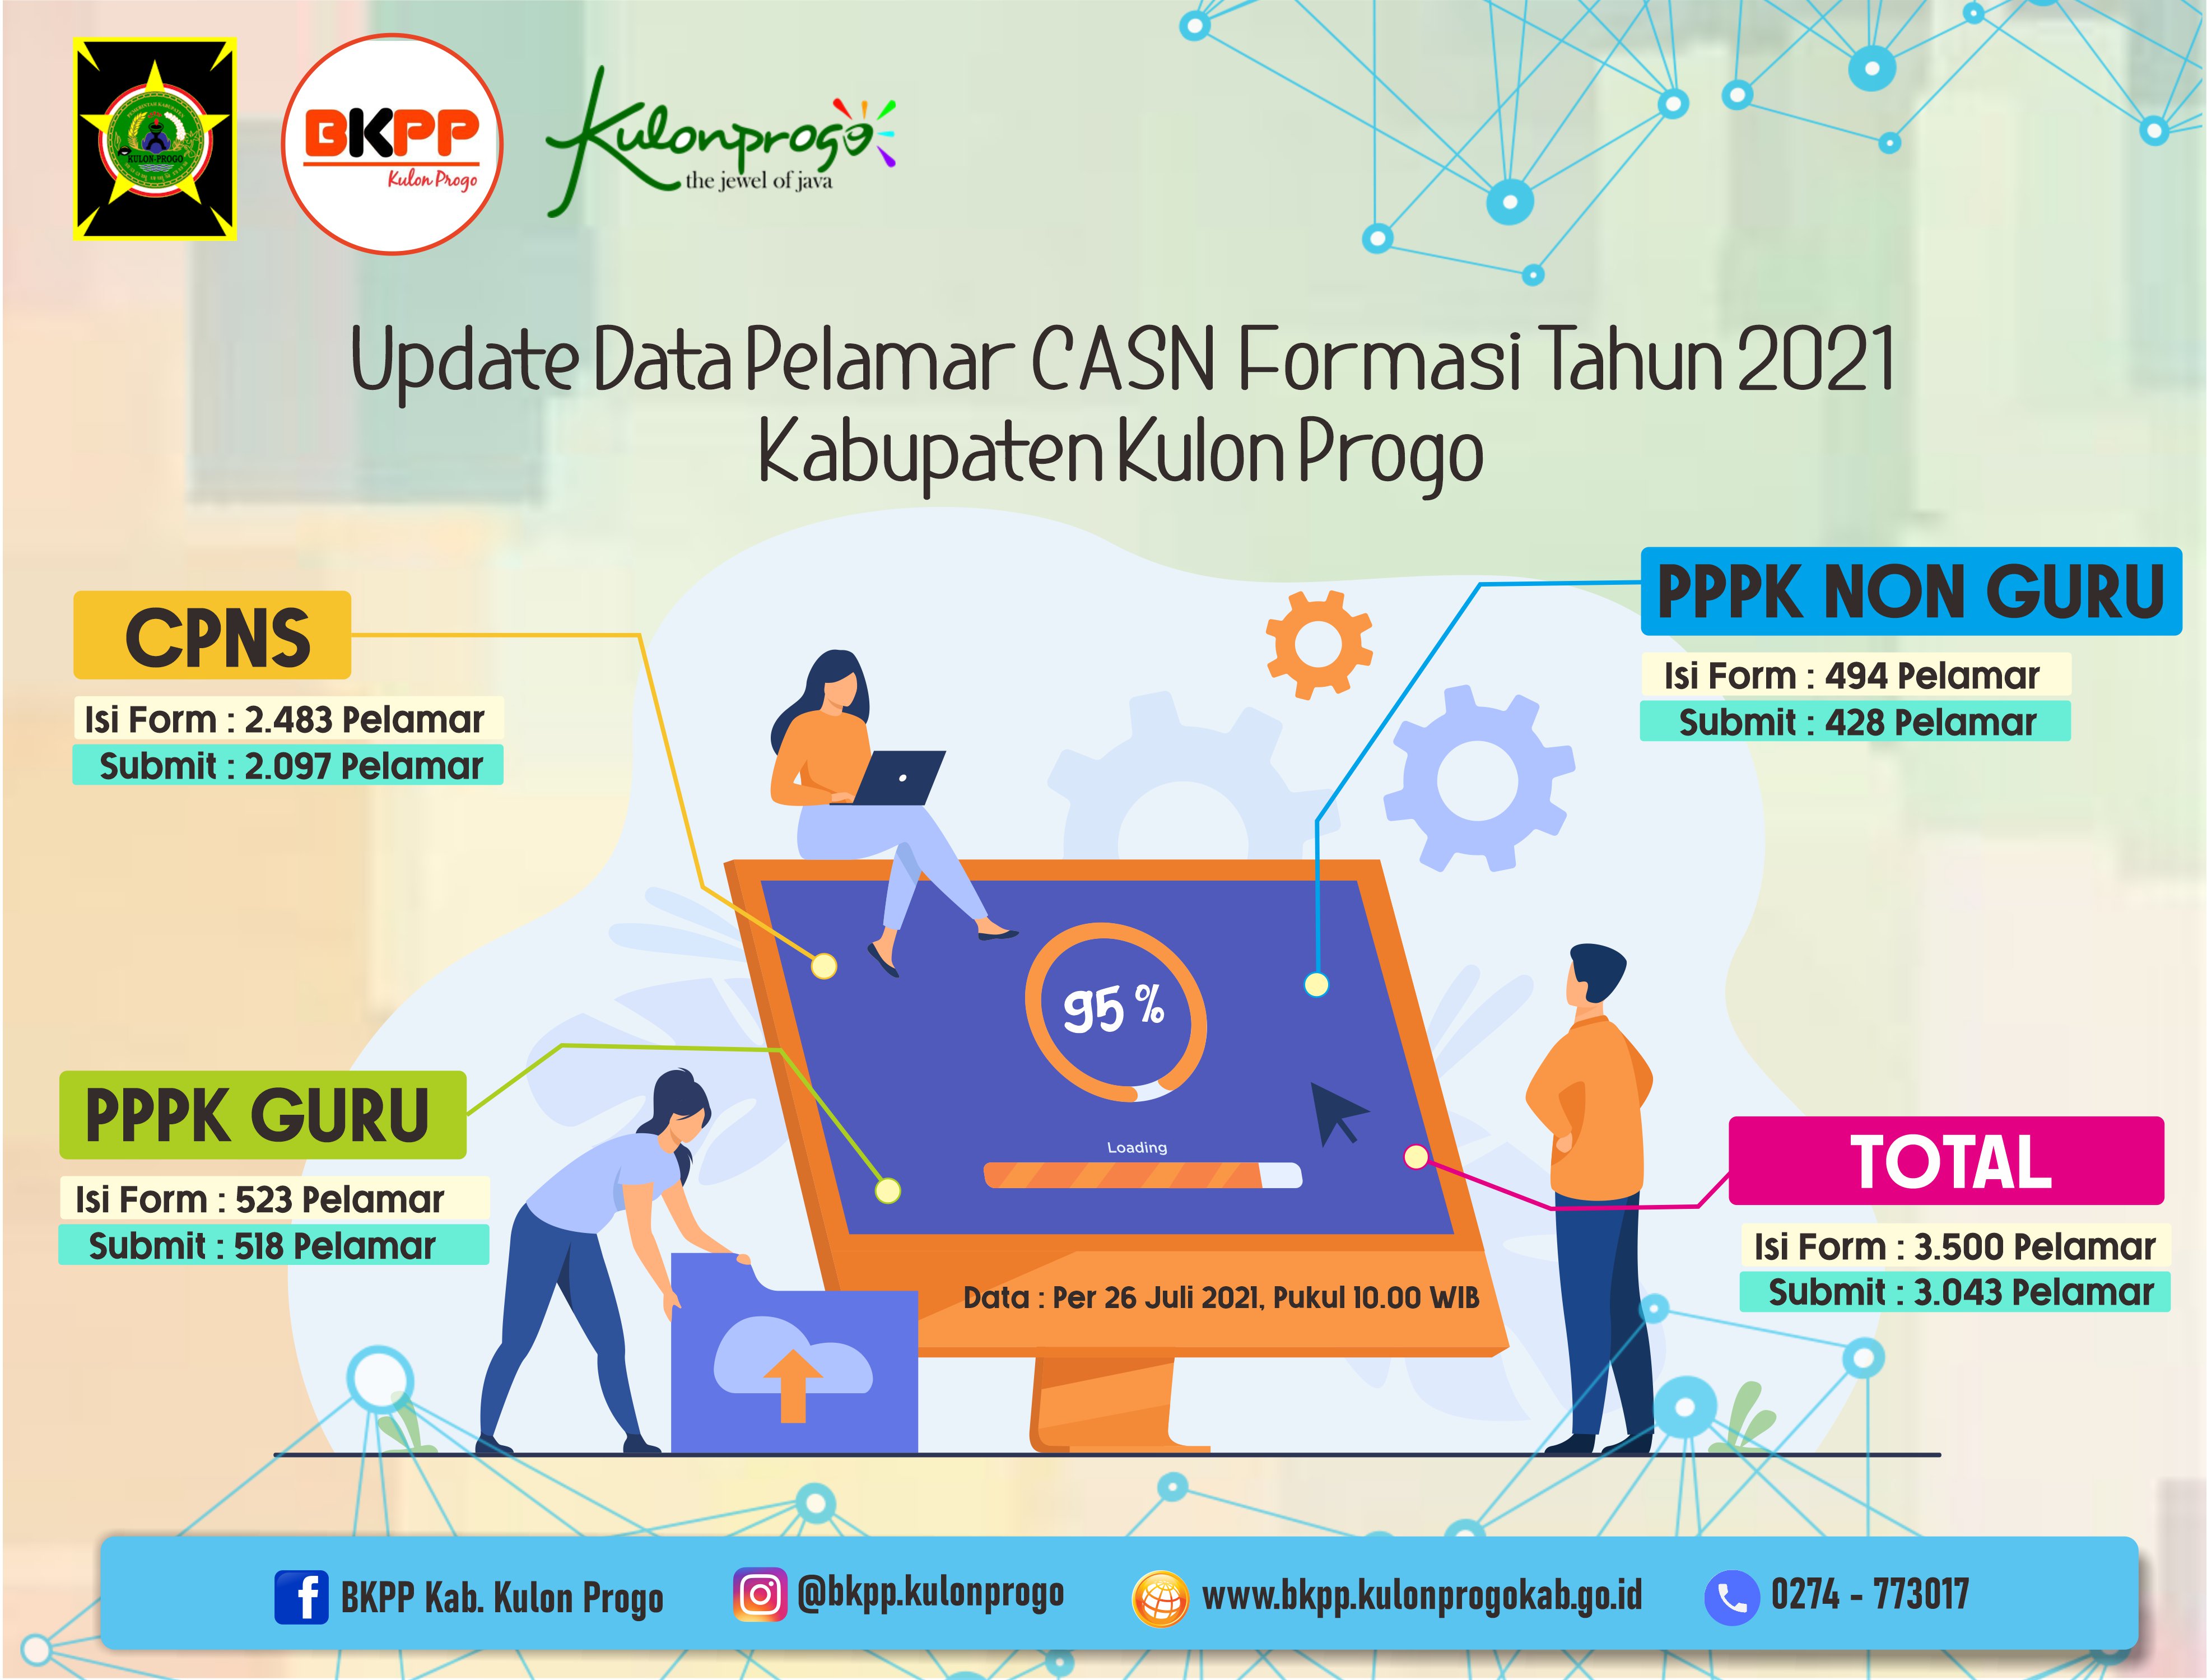 BKPP Update Data Pelamar CASN Formasi Tahun 2021 di